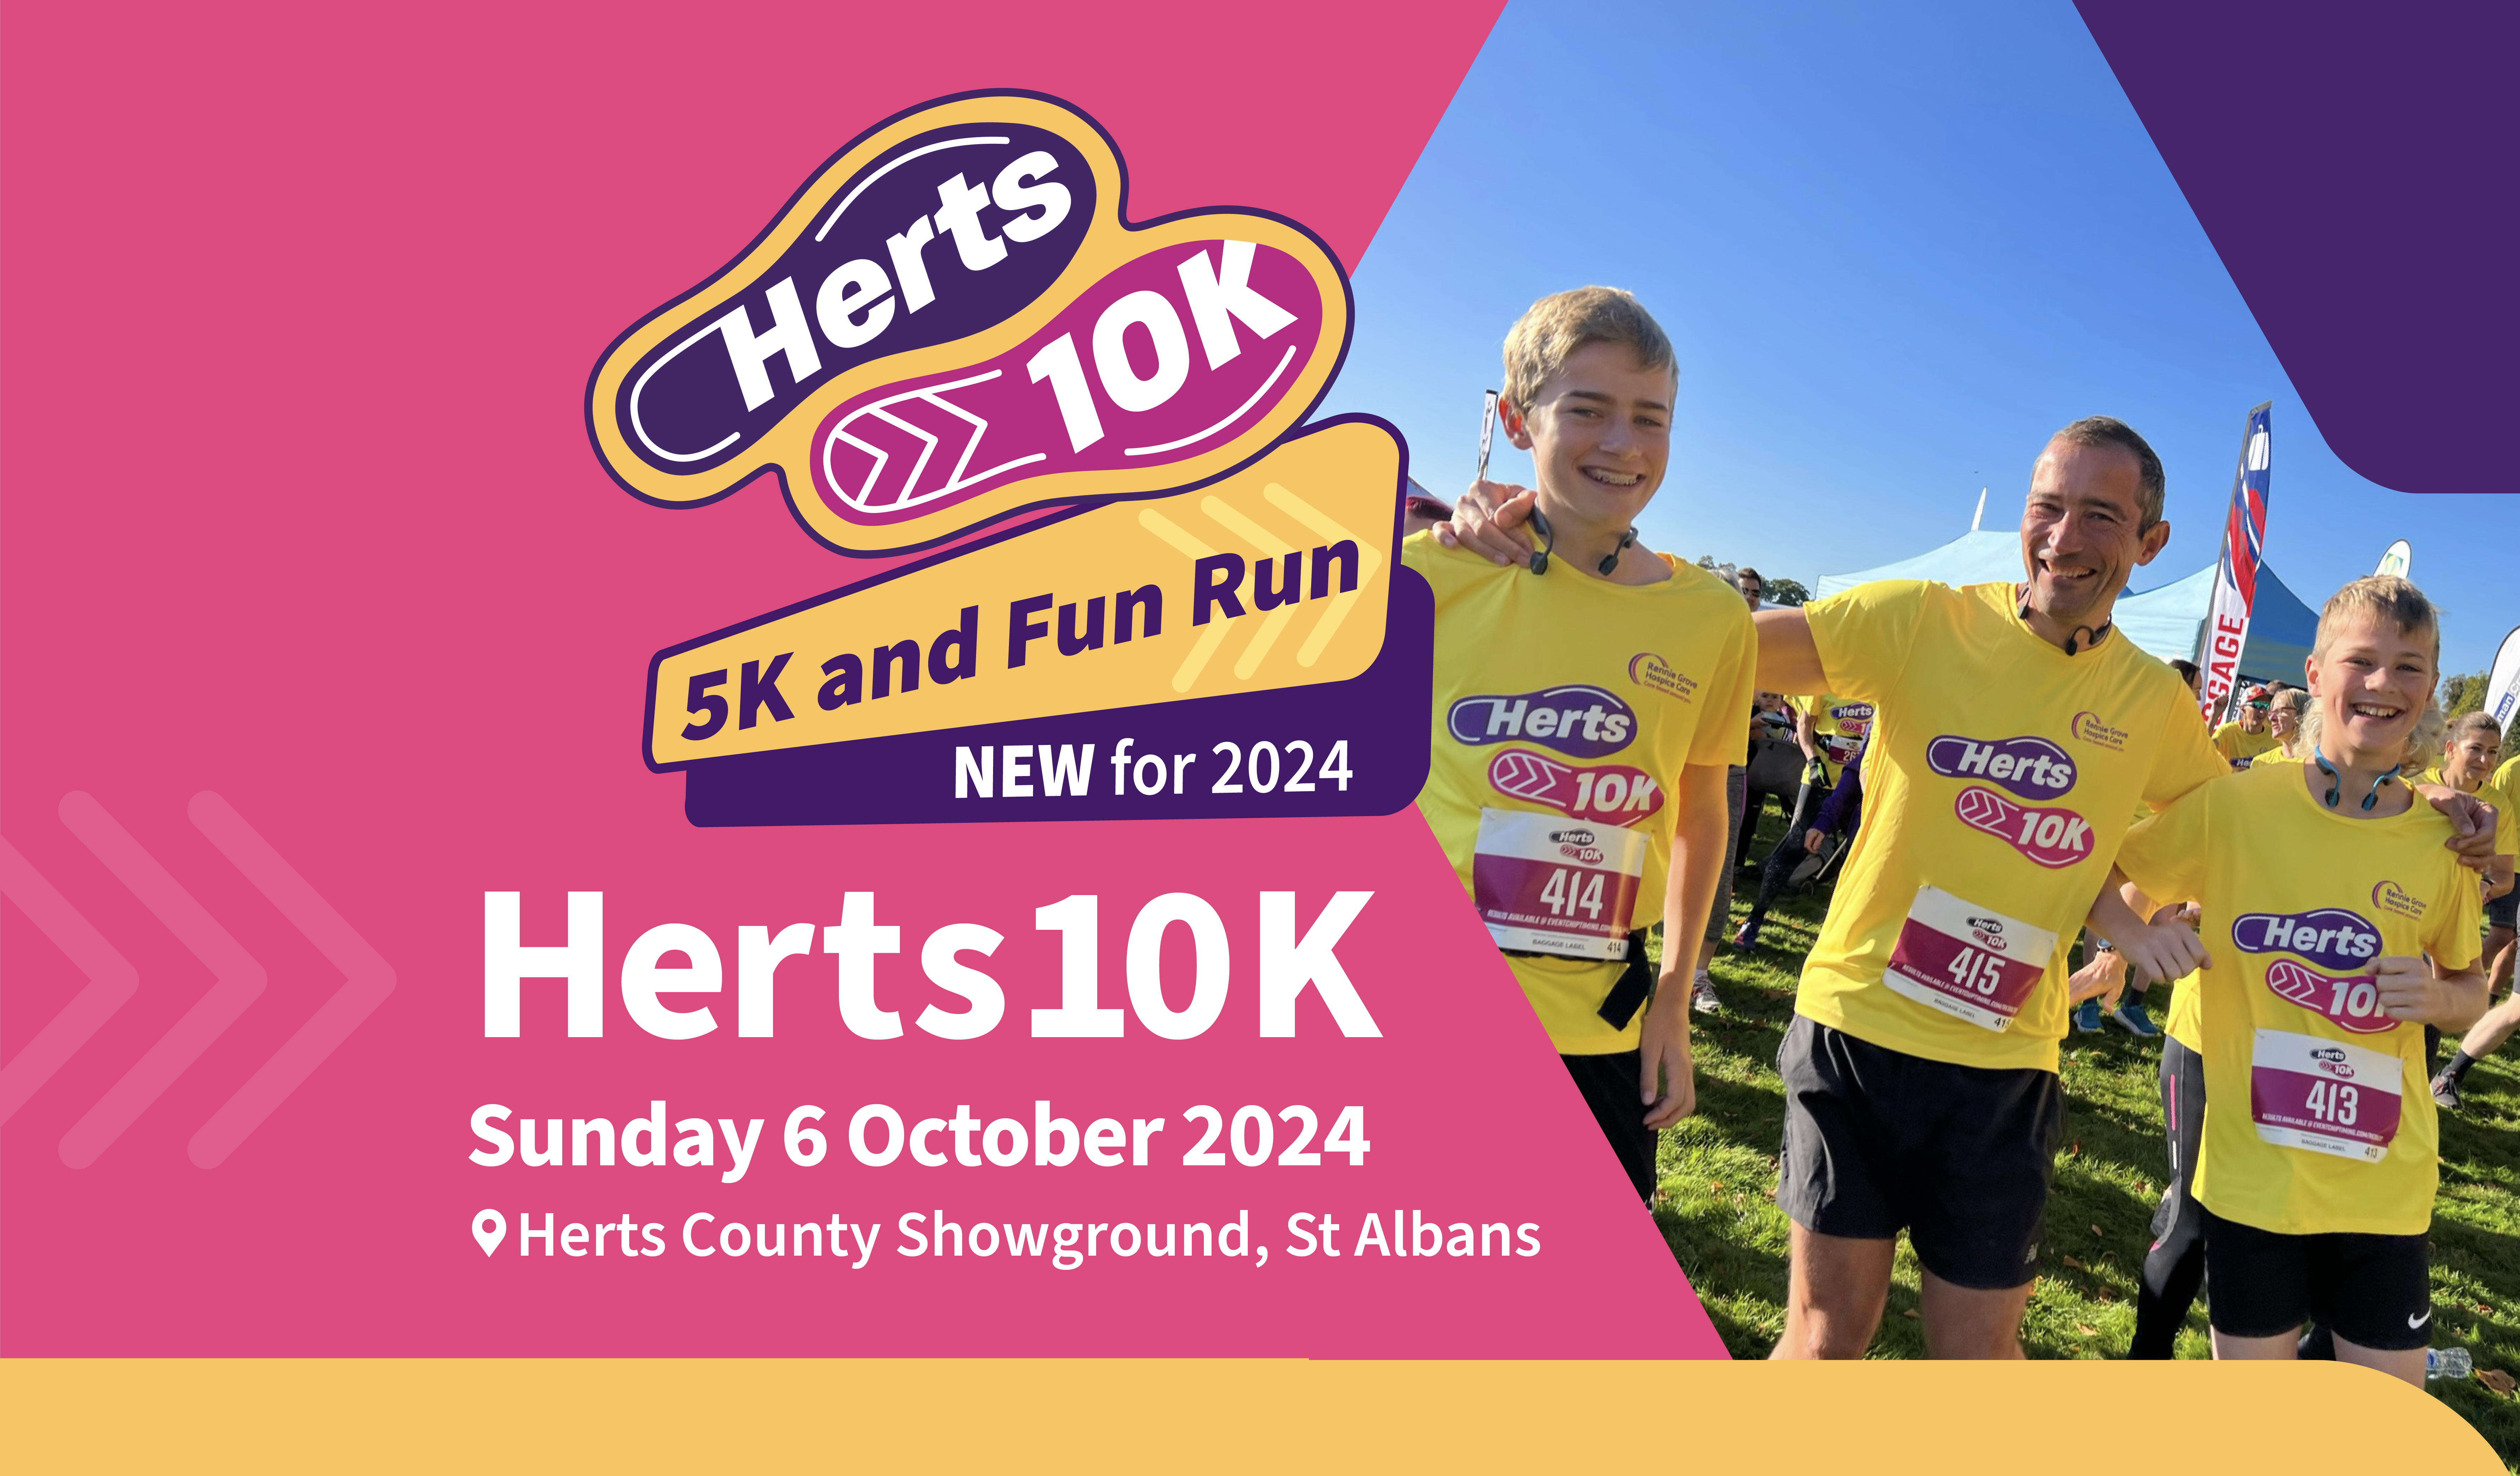 The Herts 10K, 5K and Fun Run